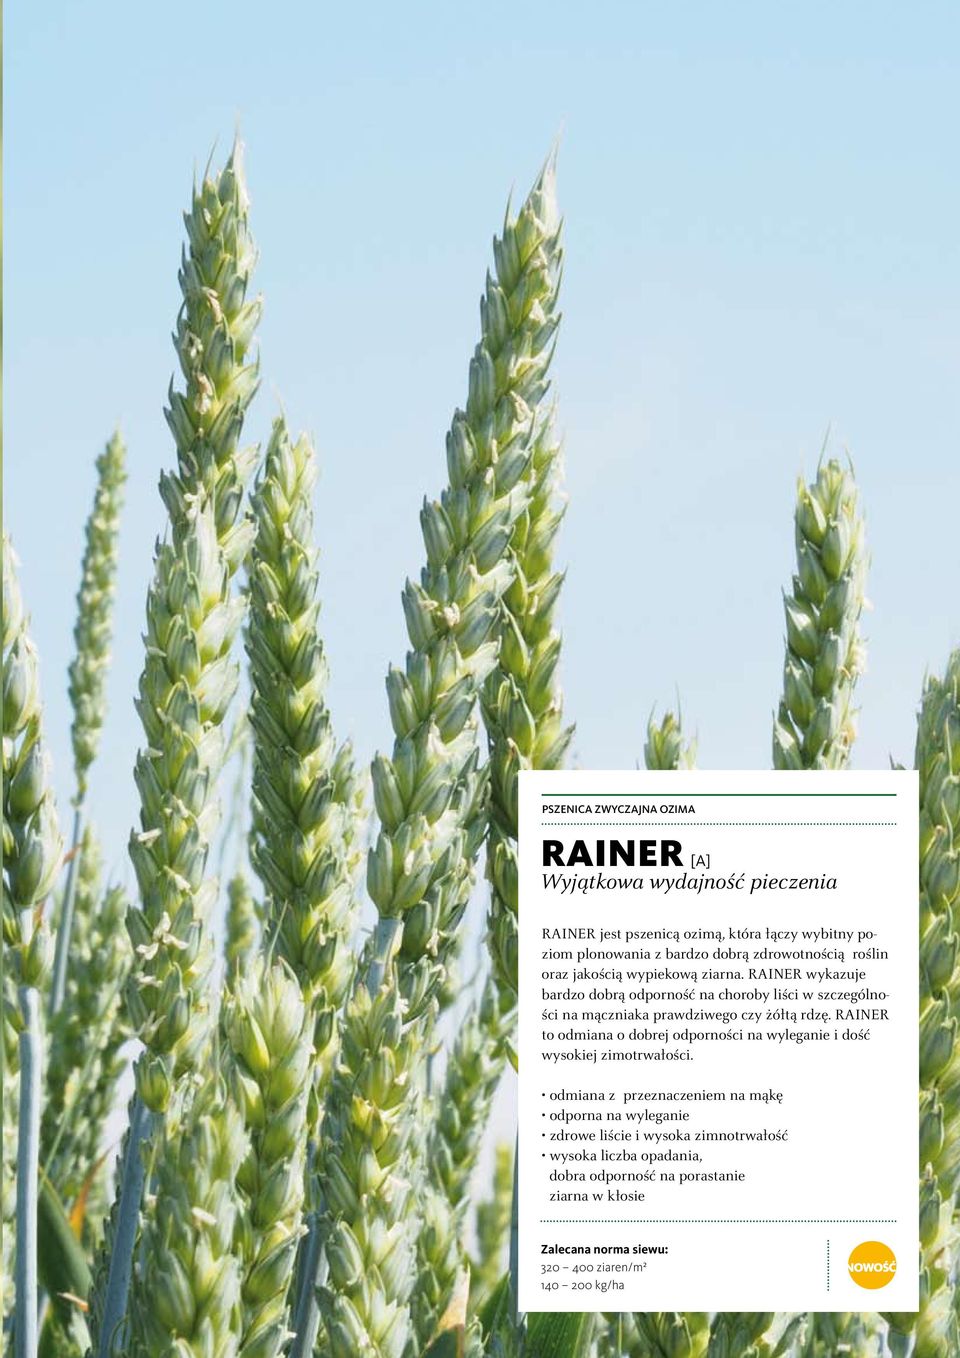 RAINER wykazuje bardzo dobrą odporność na choroby liści w szczególności na mączniaka prawdziwego czy żółtą rdzę.